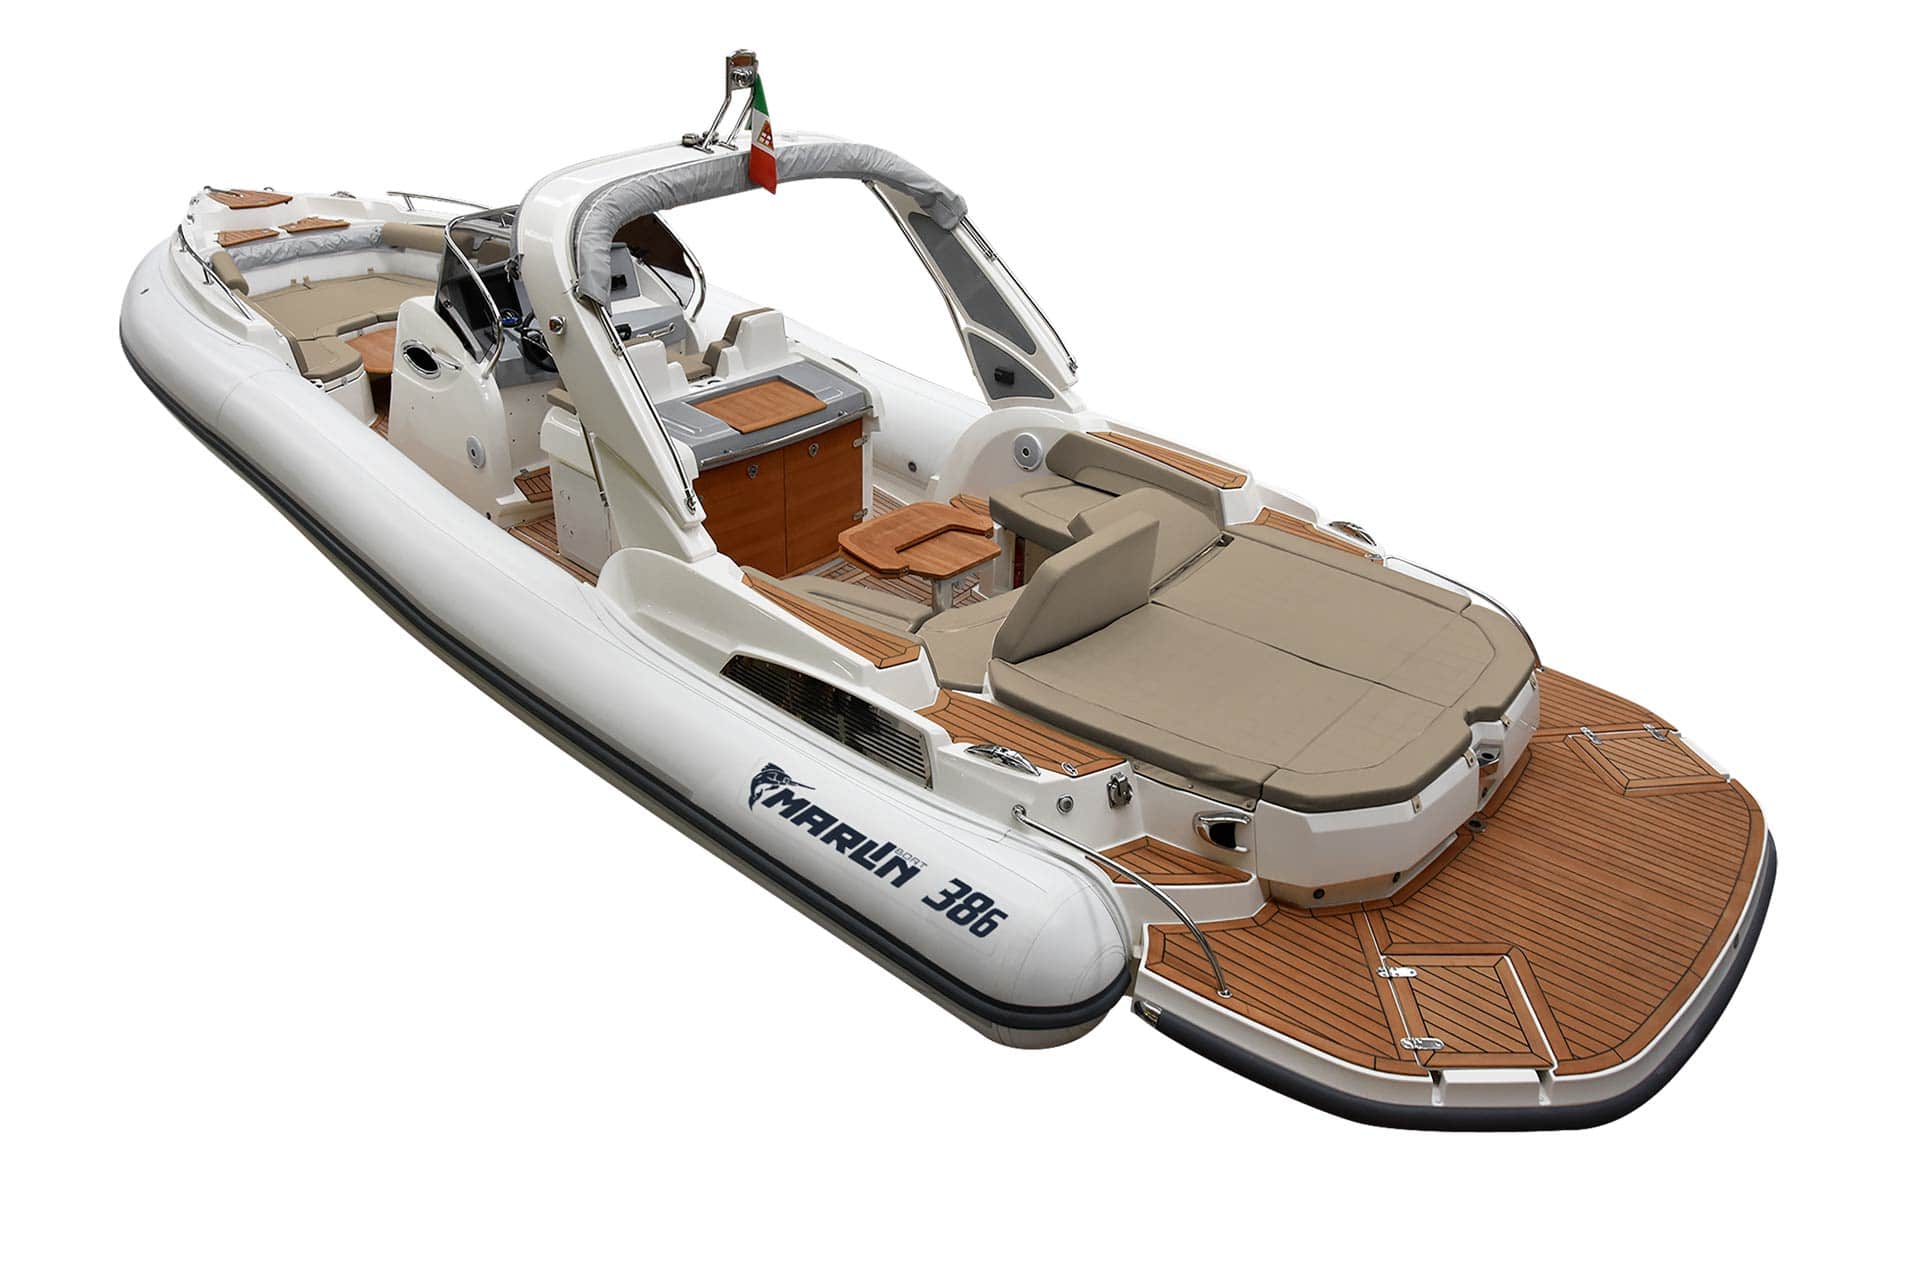 Marlin Boat - Gommone Fuoribordo Modello 386